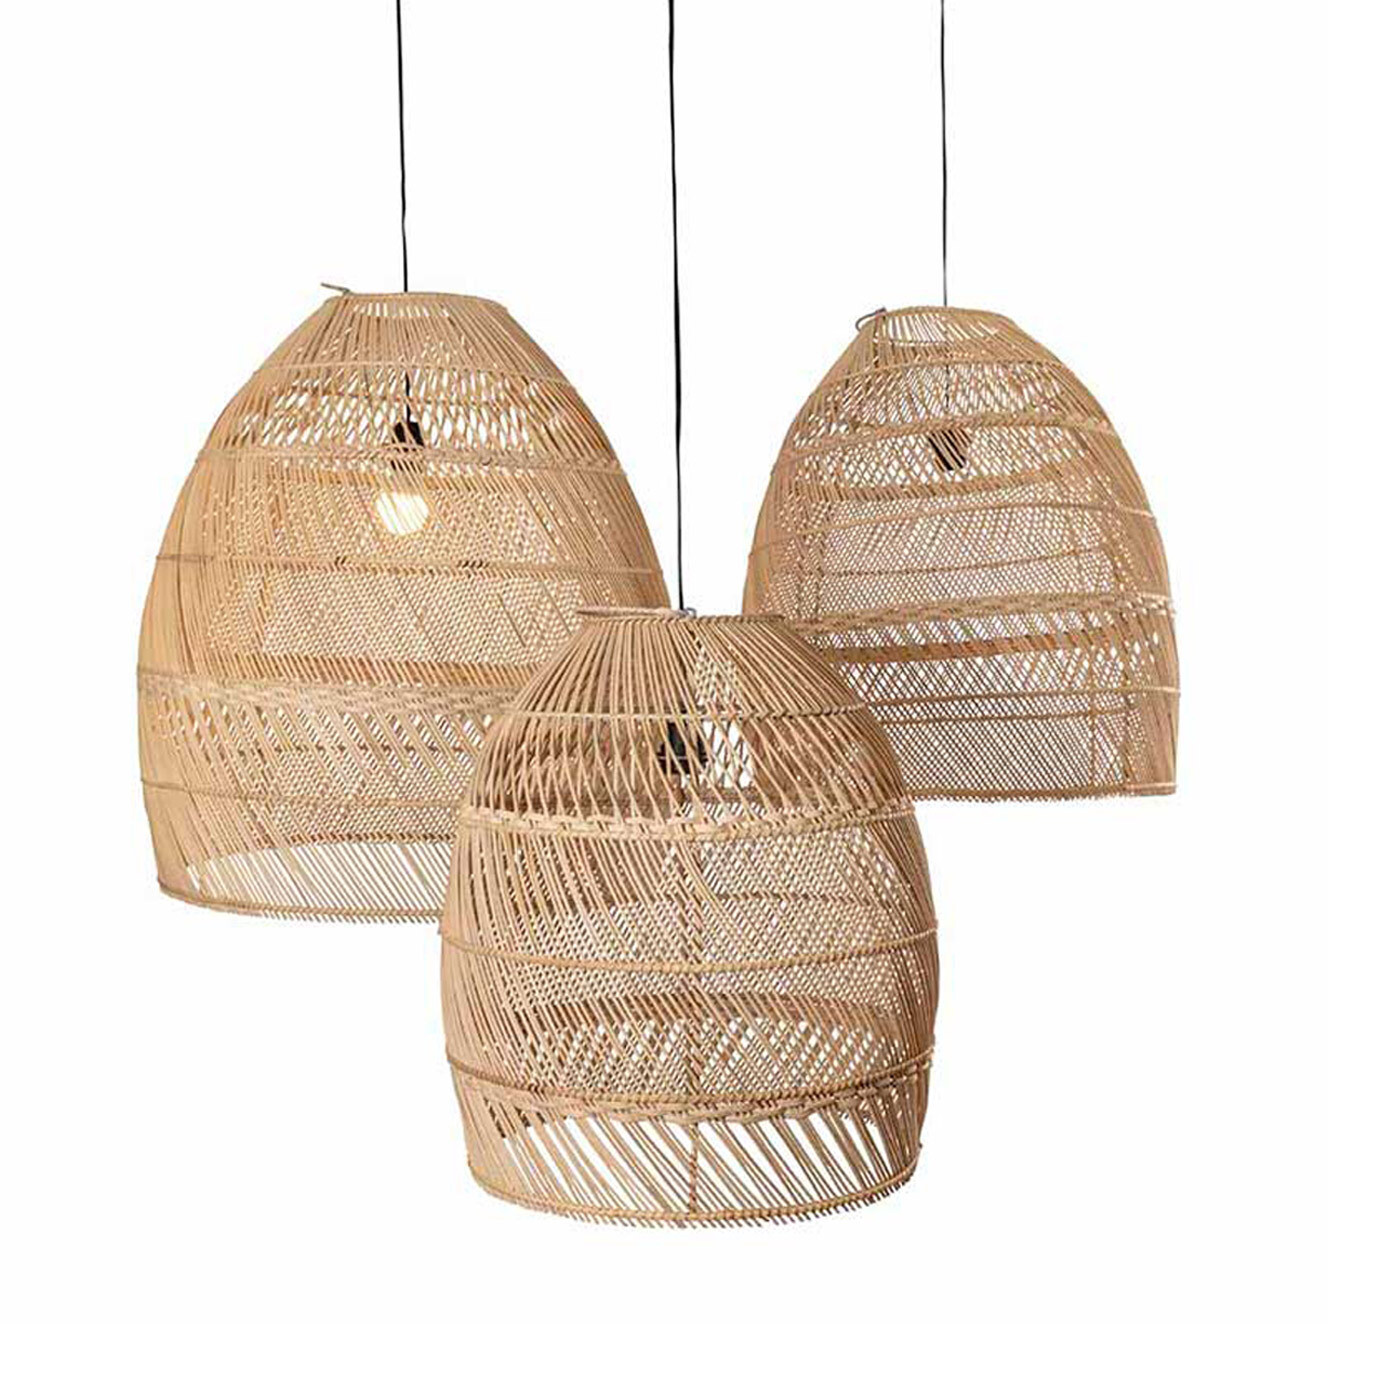 Boho lampenkap uit Bali van rotan - naturel kleur - eco design hanglampen  van het merk Orginal Home (